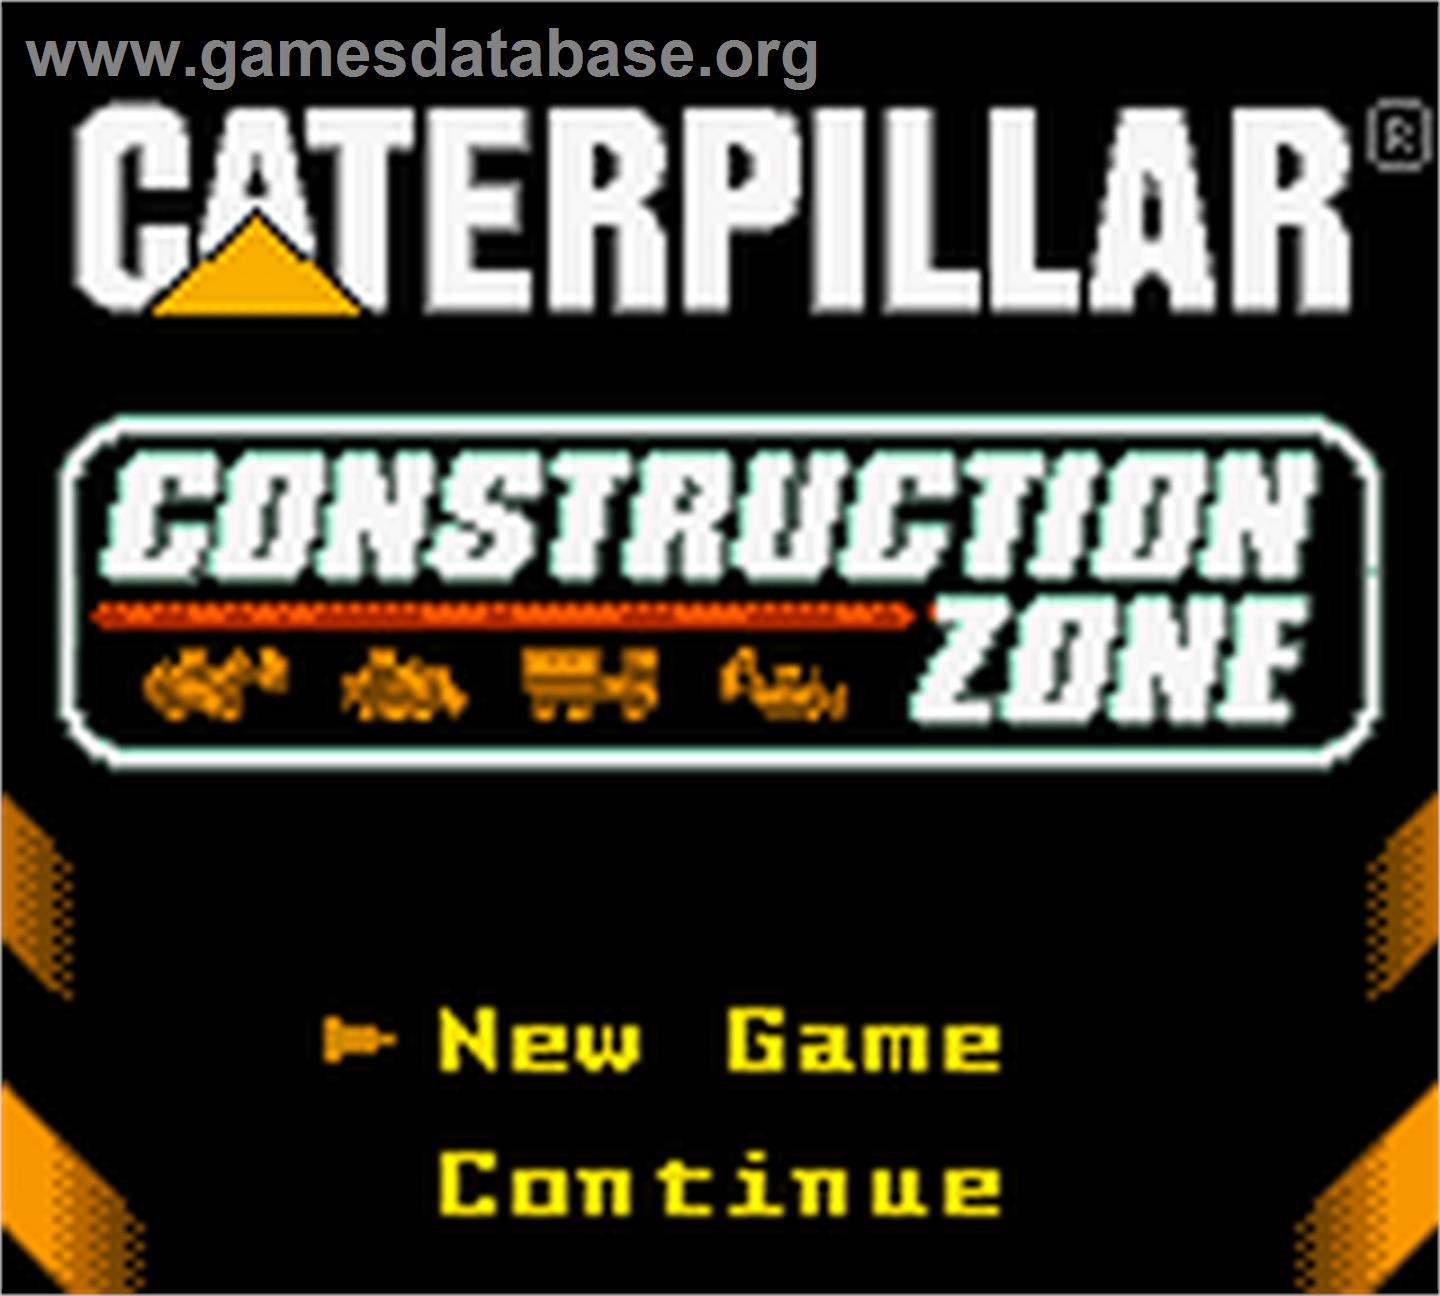 Caterpillar Construction Zone - Nintendo Game Boy Color - Artwork - Title Screen